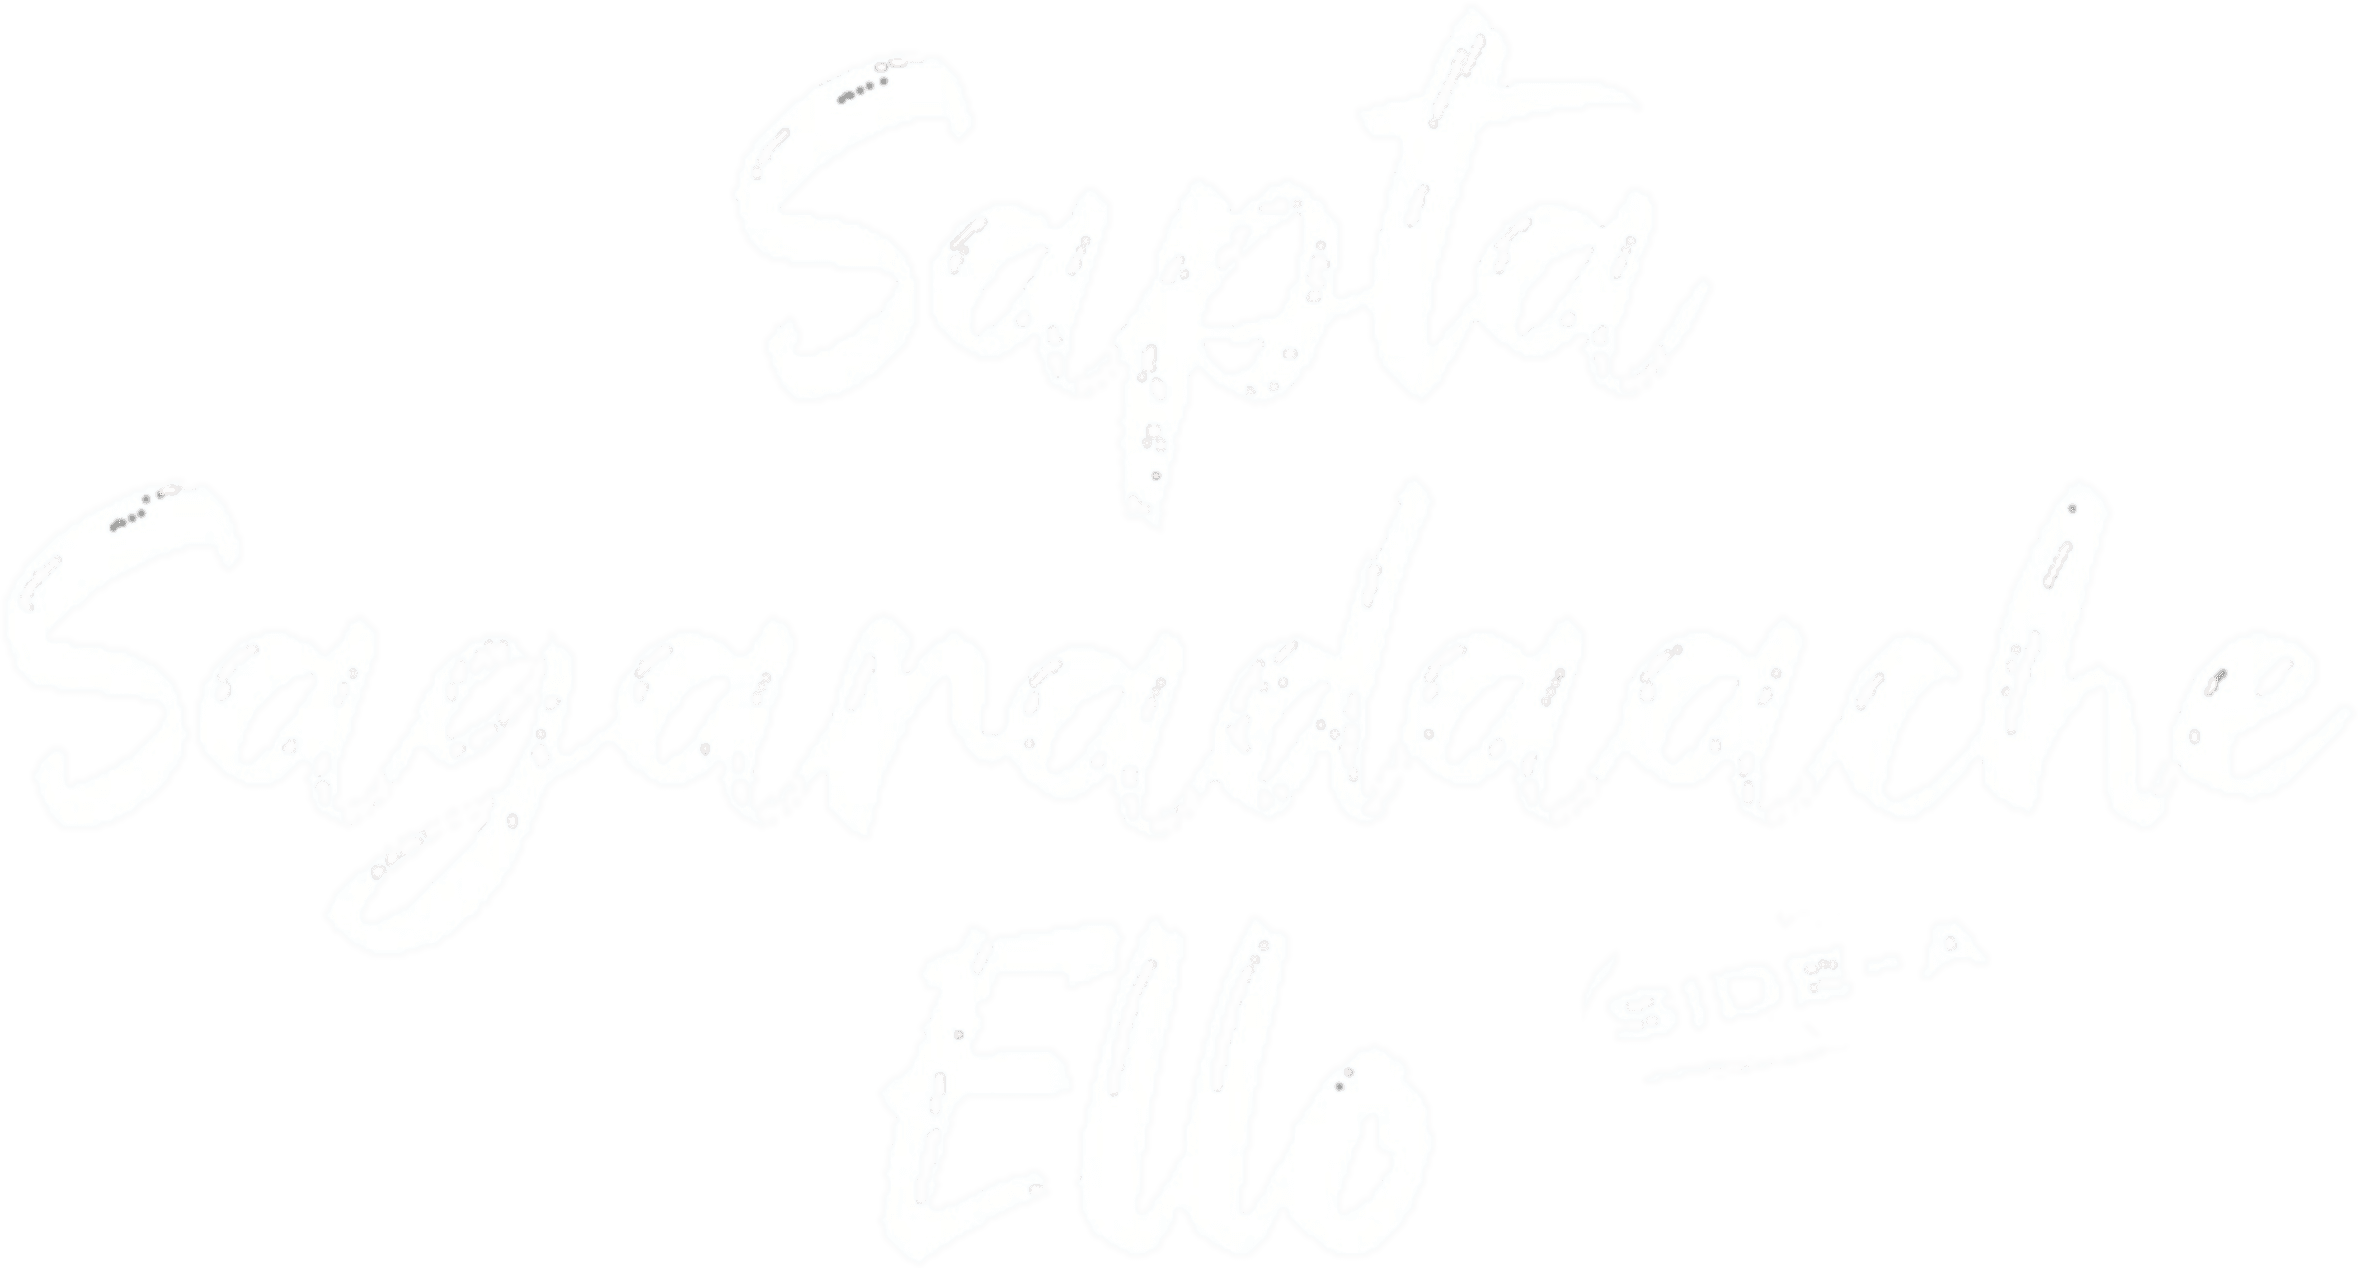 Sapta Sagaradaache Ello – Side A logo